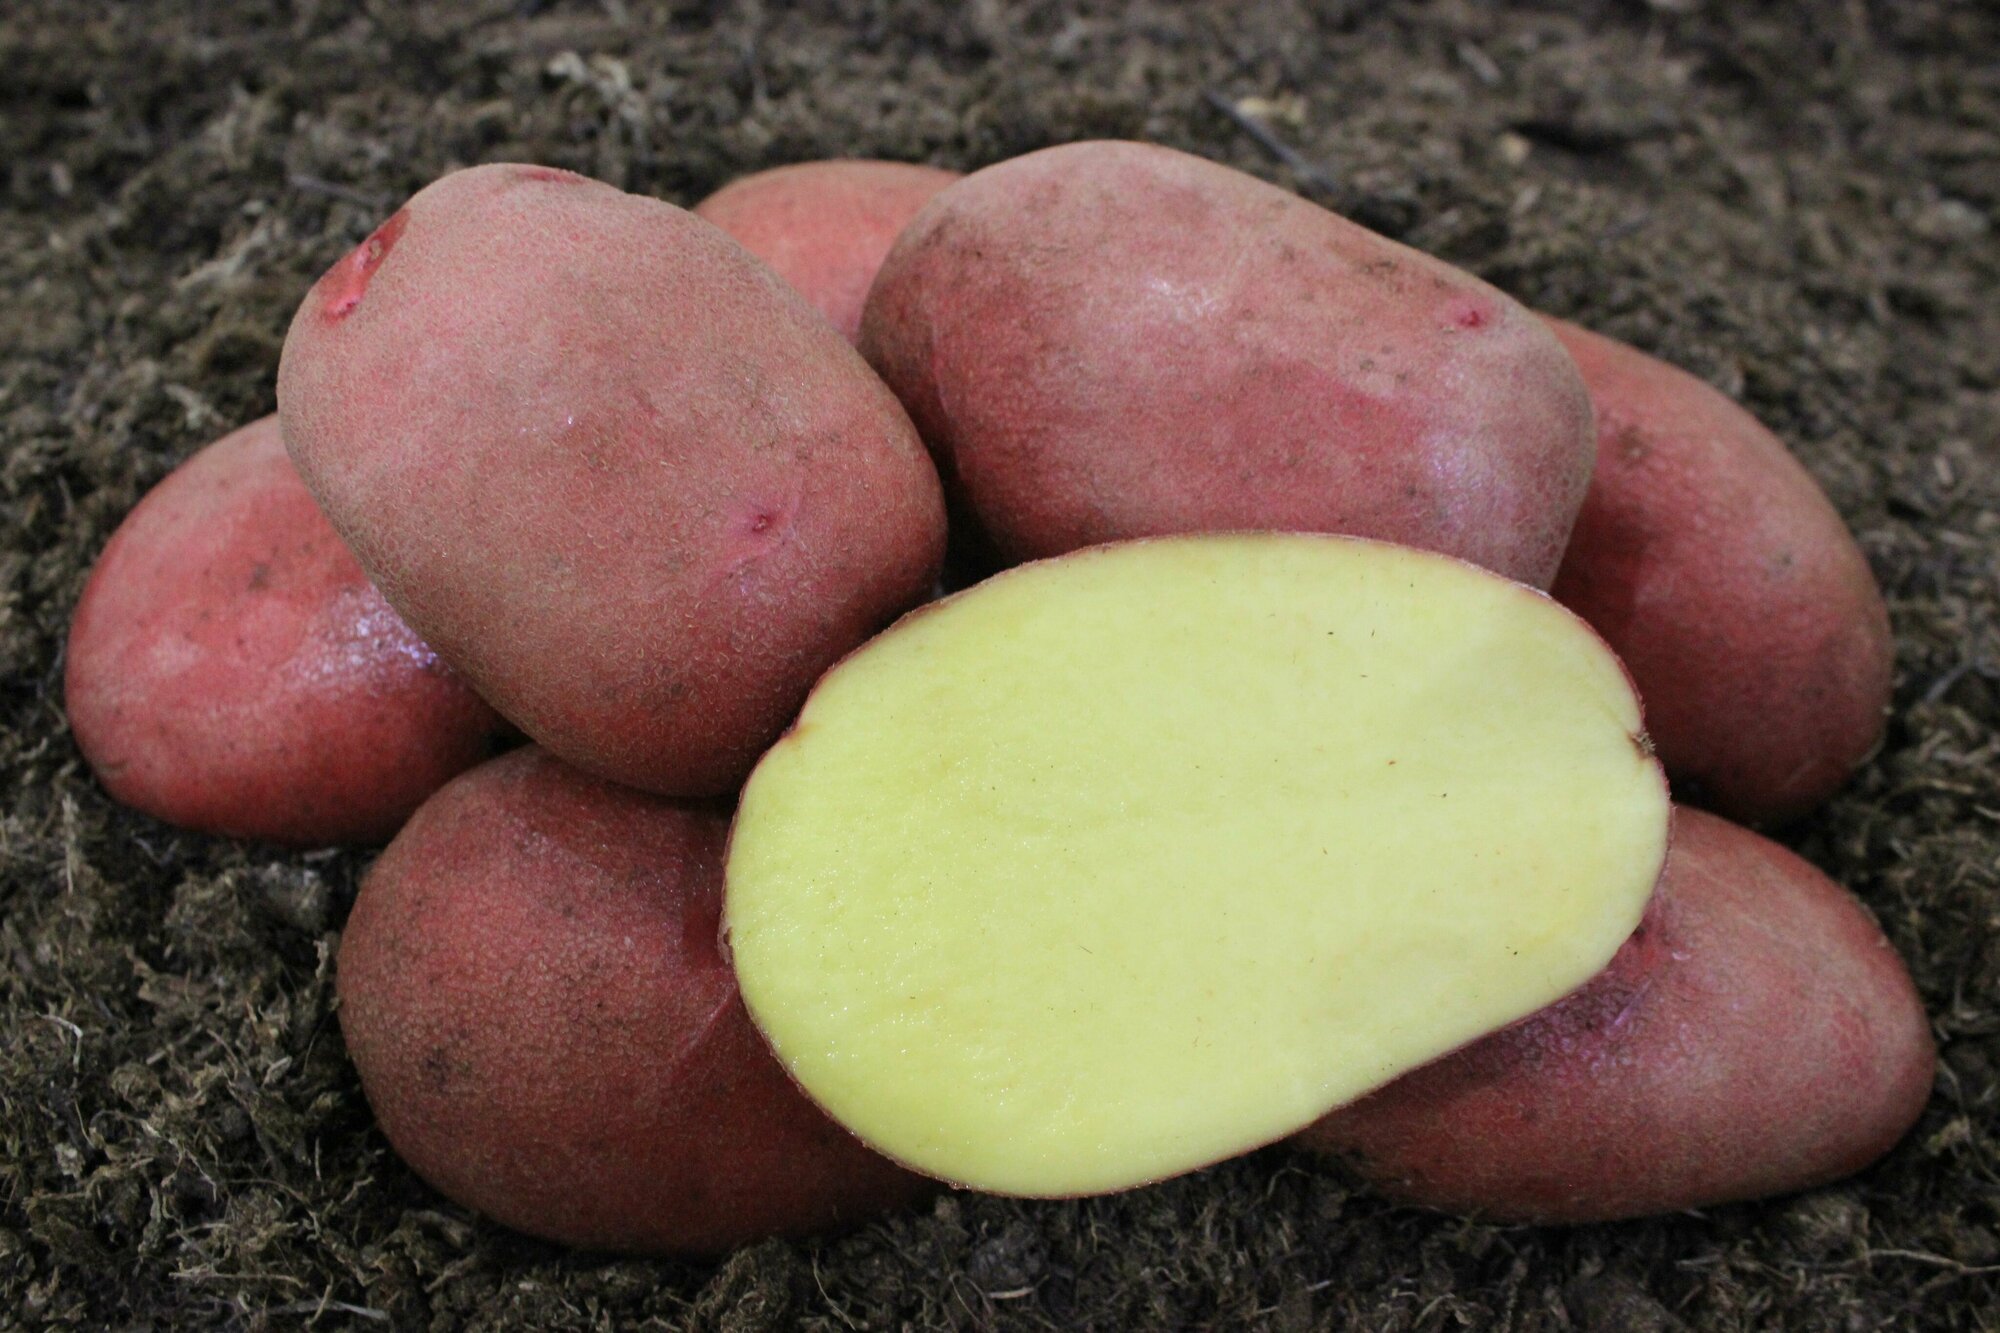 Картофель семенной Мираж (суперэлита) (4 кг) Хранение, пюре, жарка, запекание